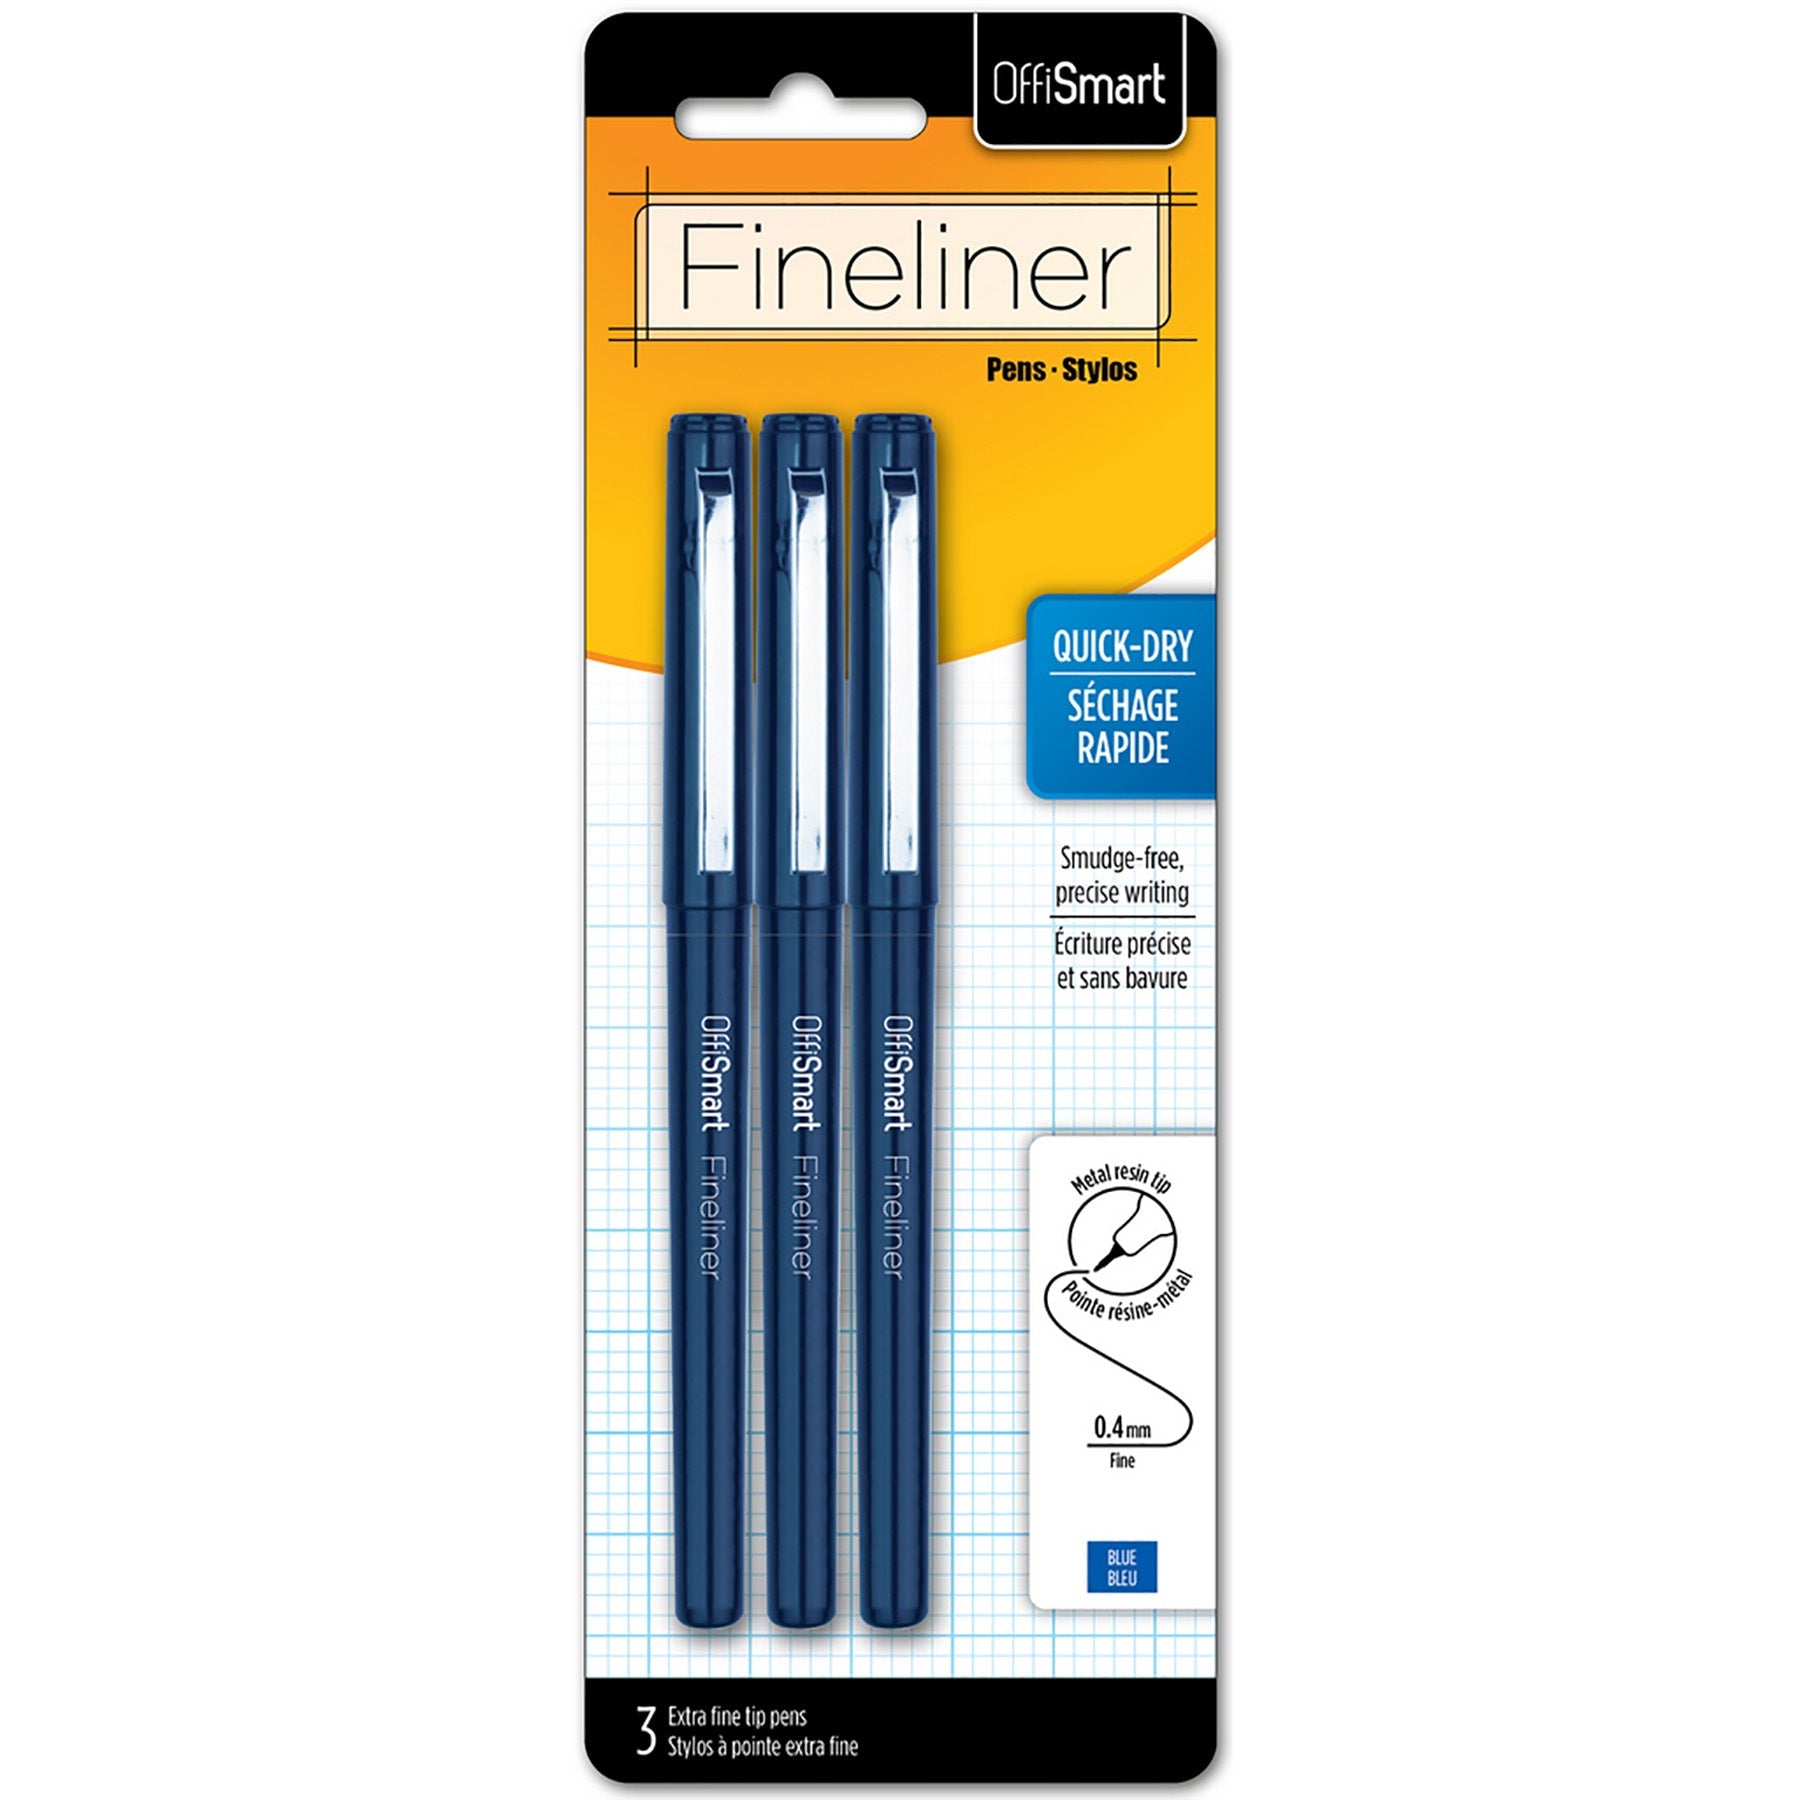 Offismart 3 Fineliners Blue Ink 0.4mm